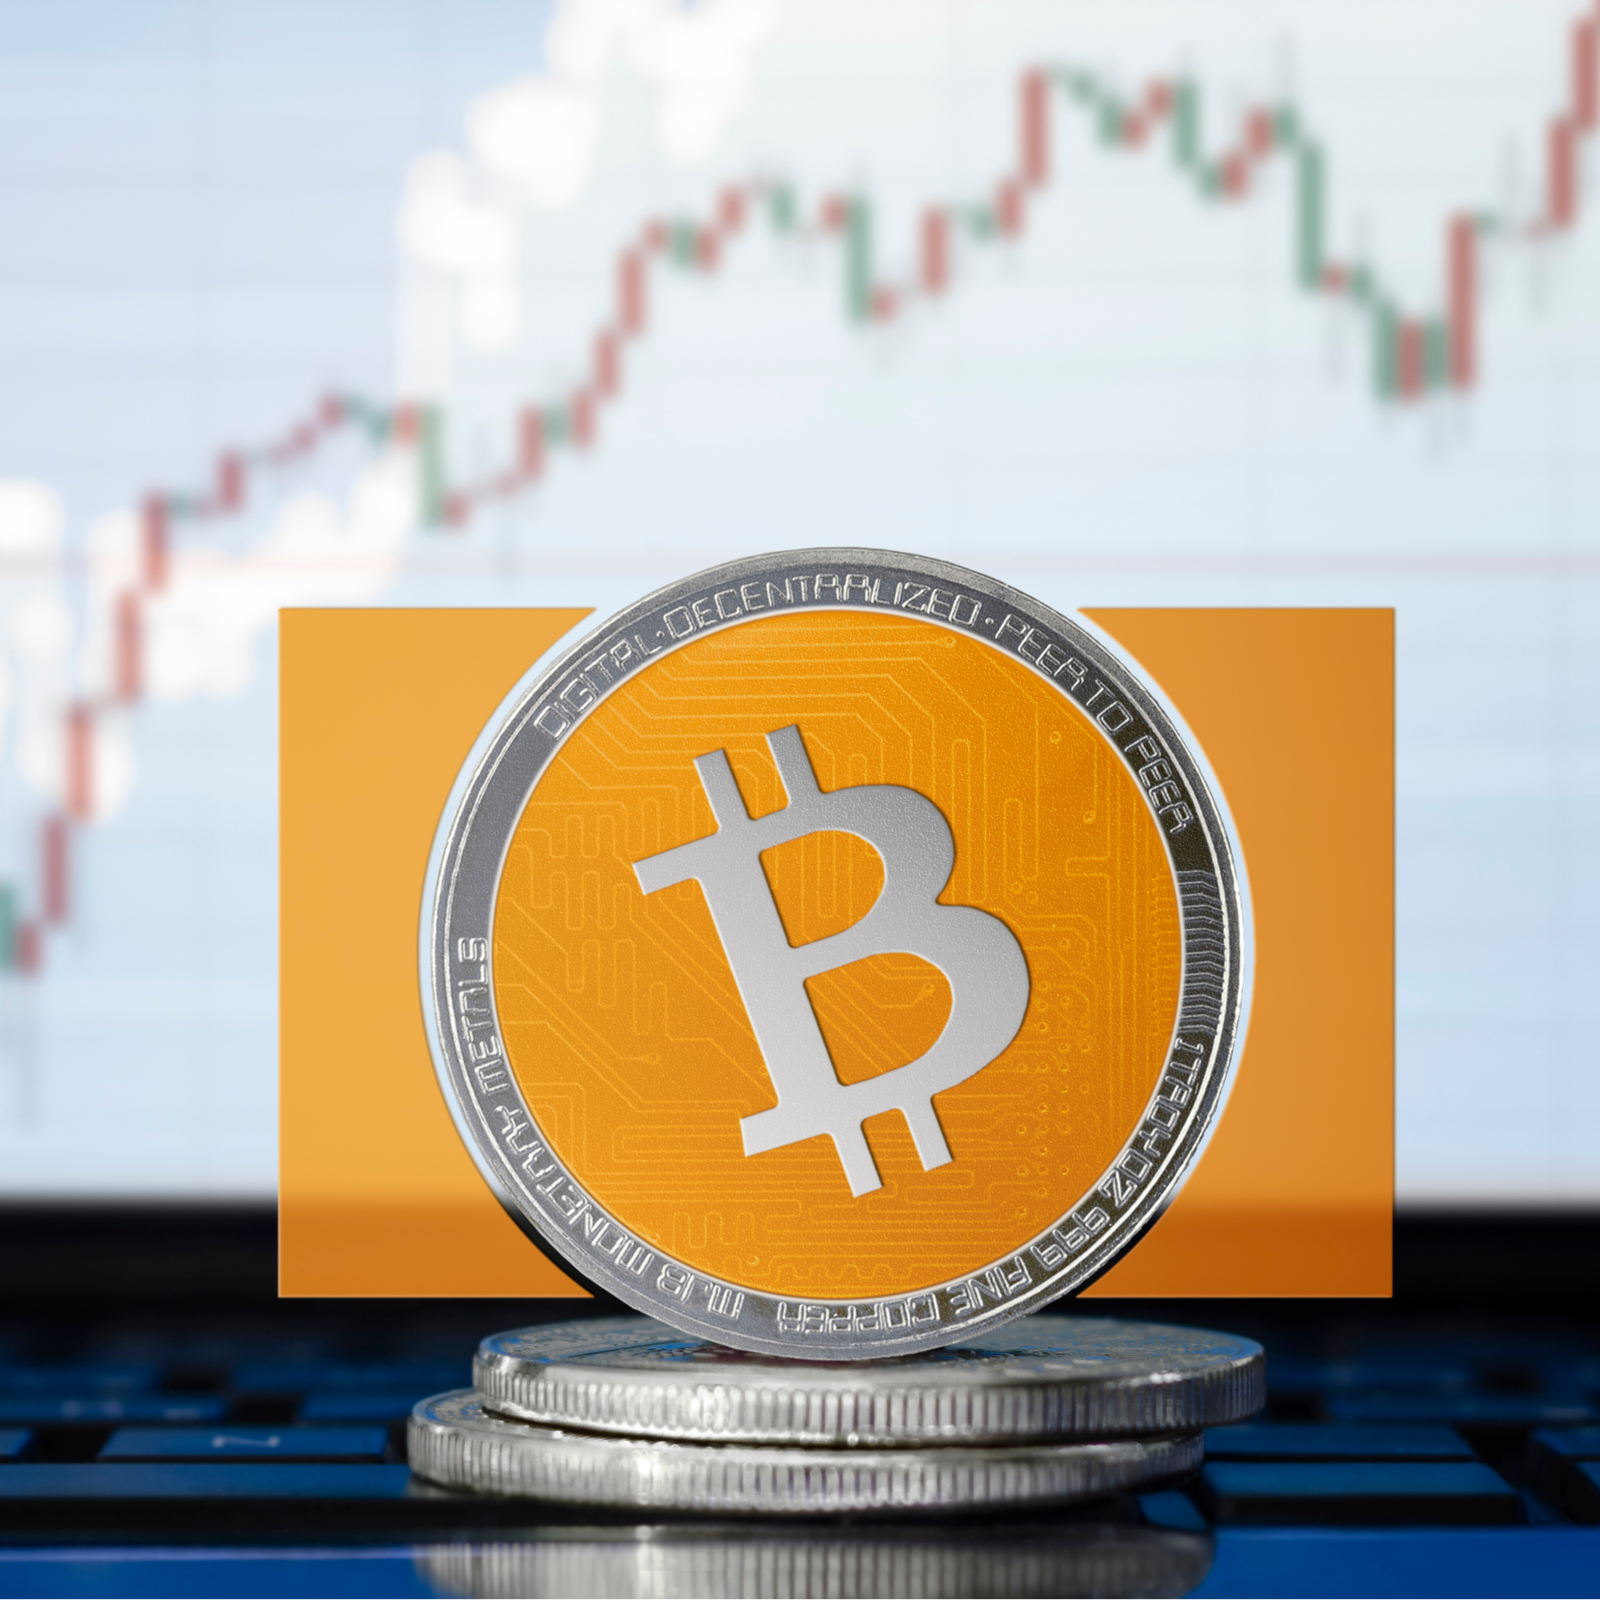 cmc markets bitcoin